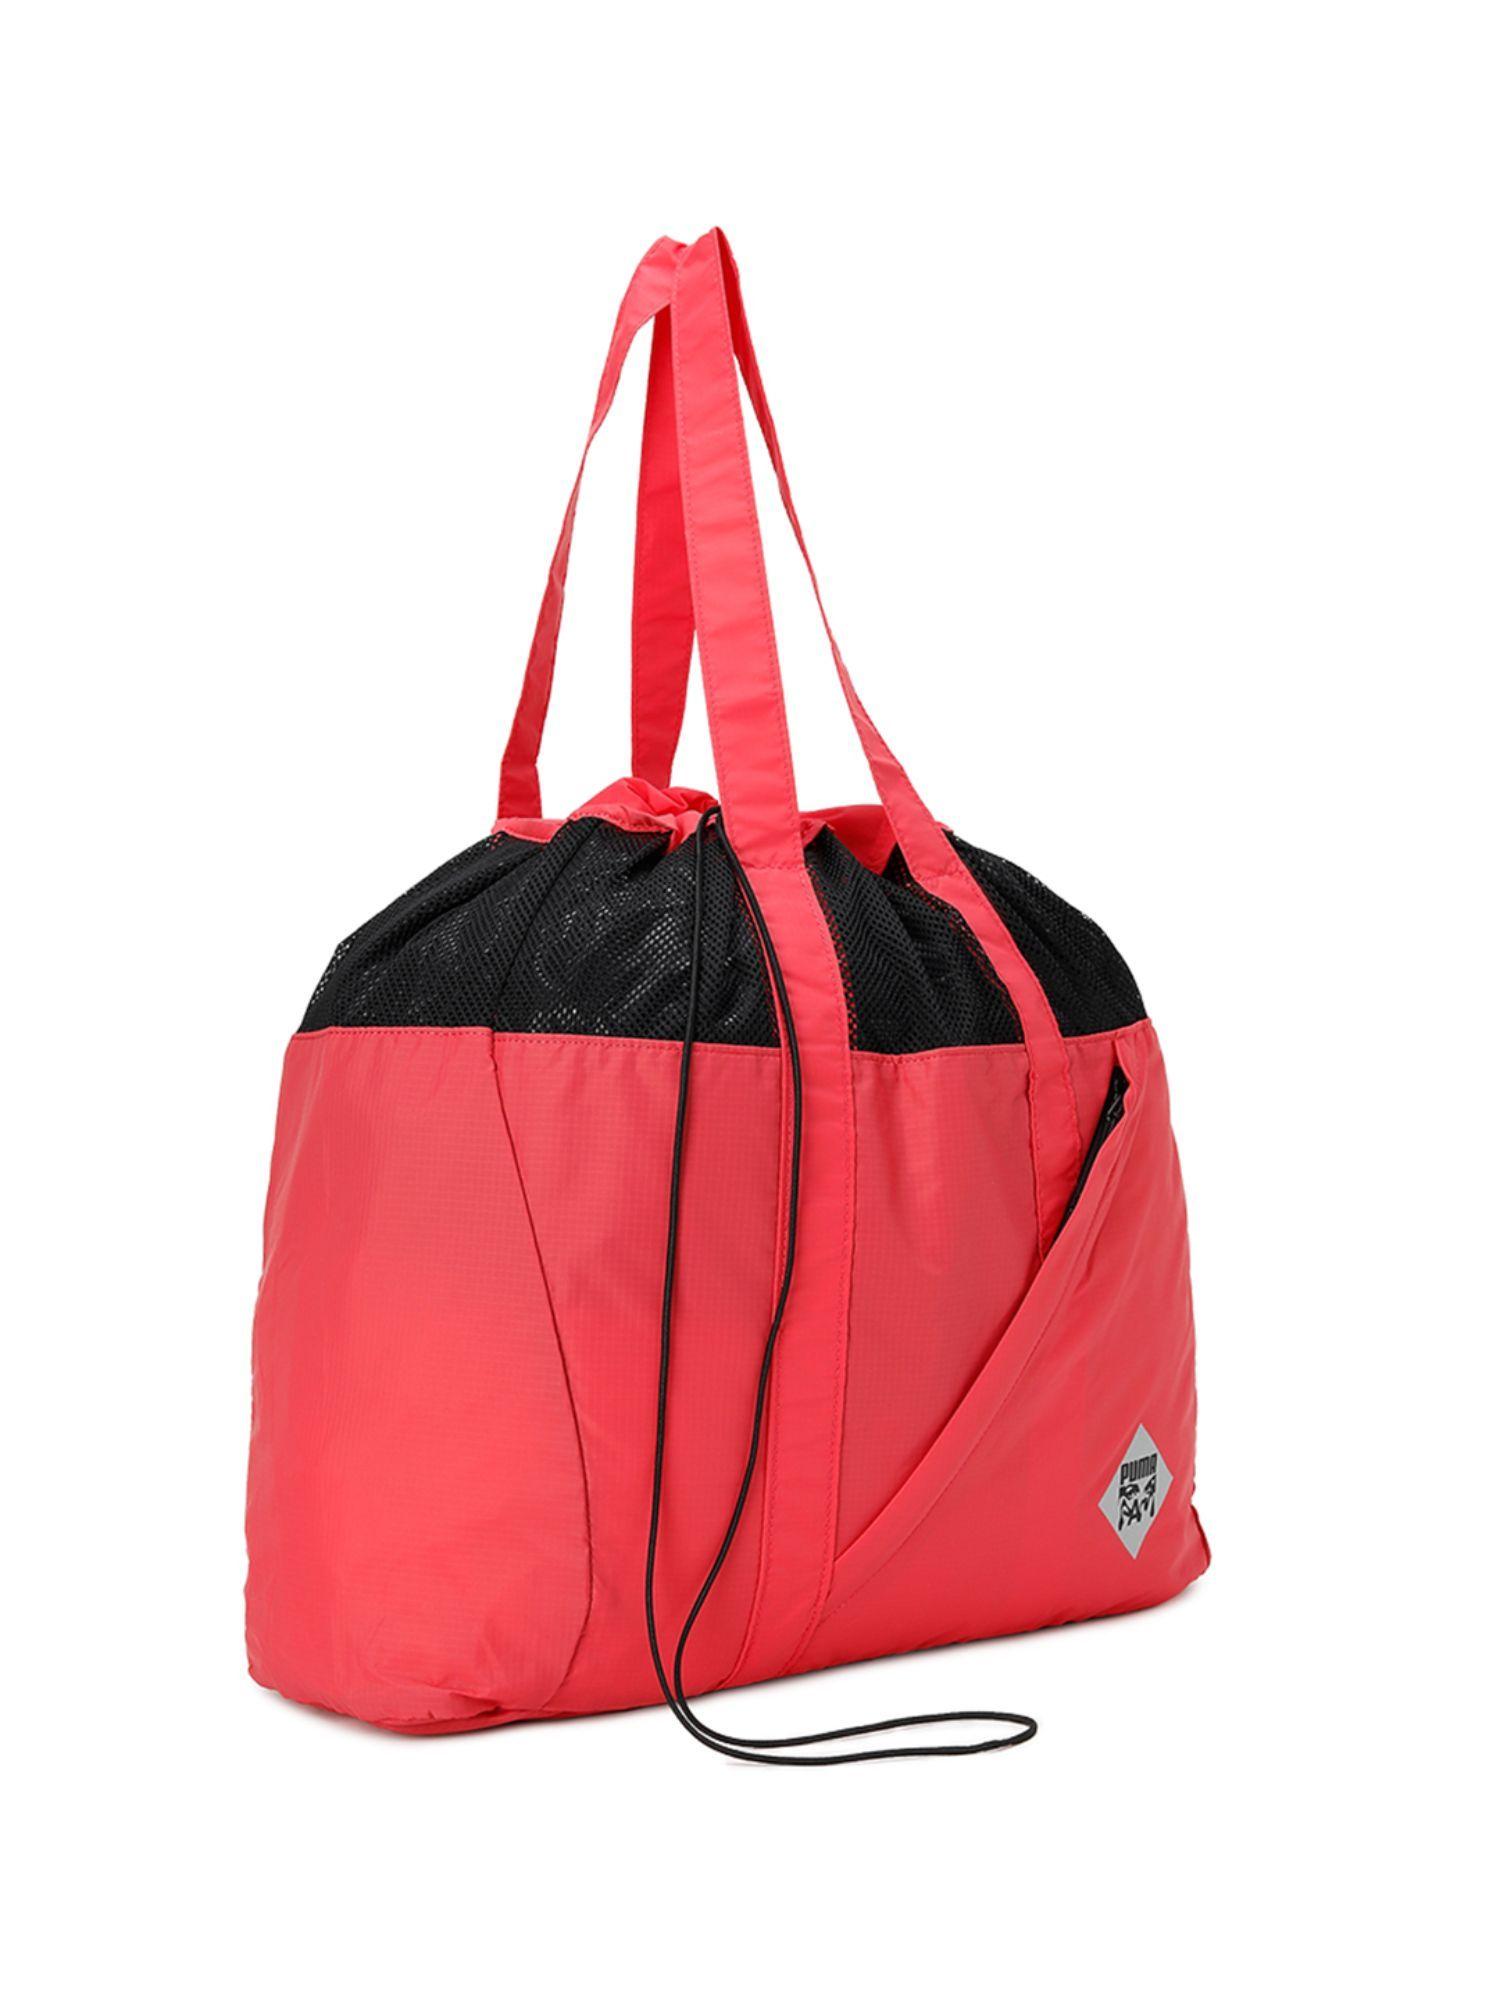 xp.a.m. packable unisex red shopper bag